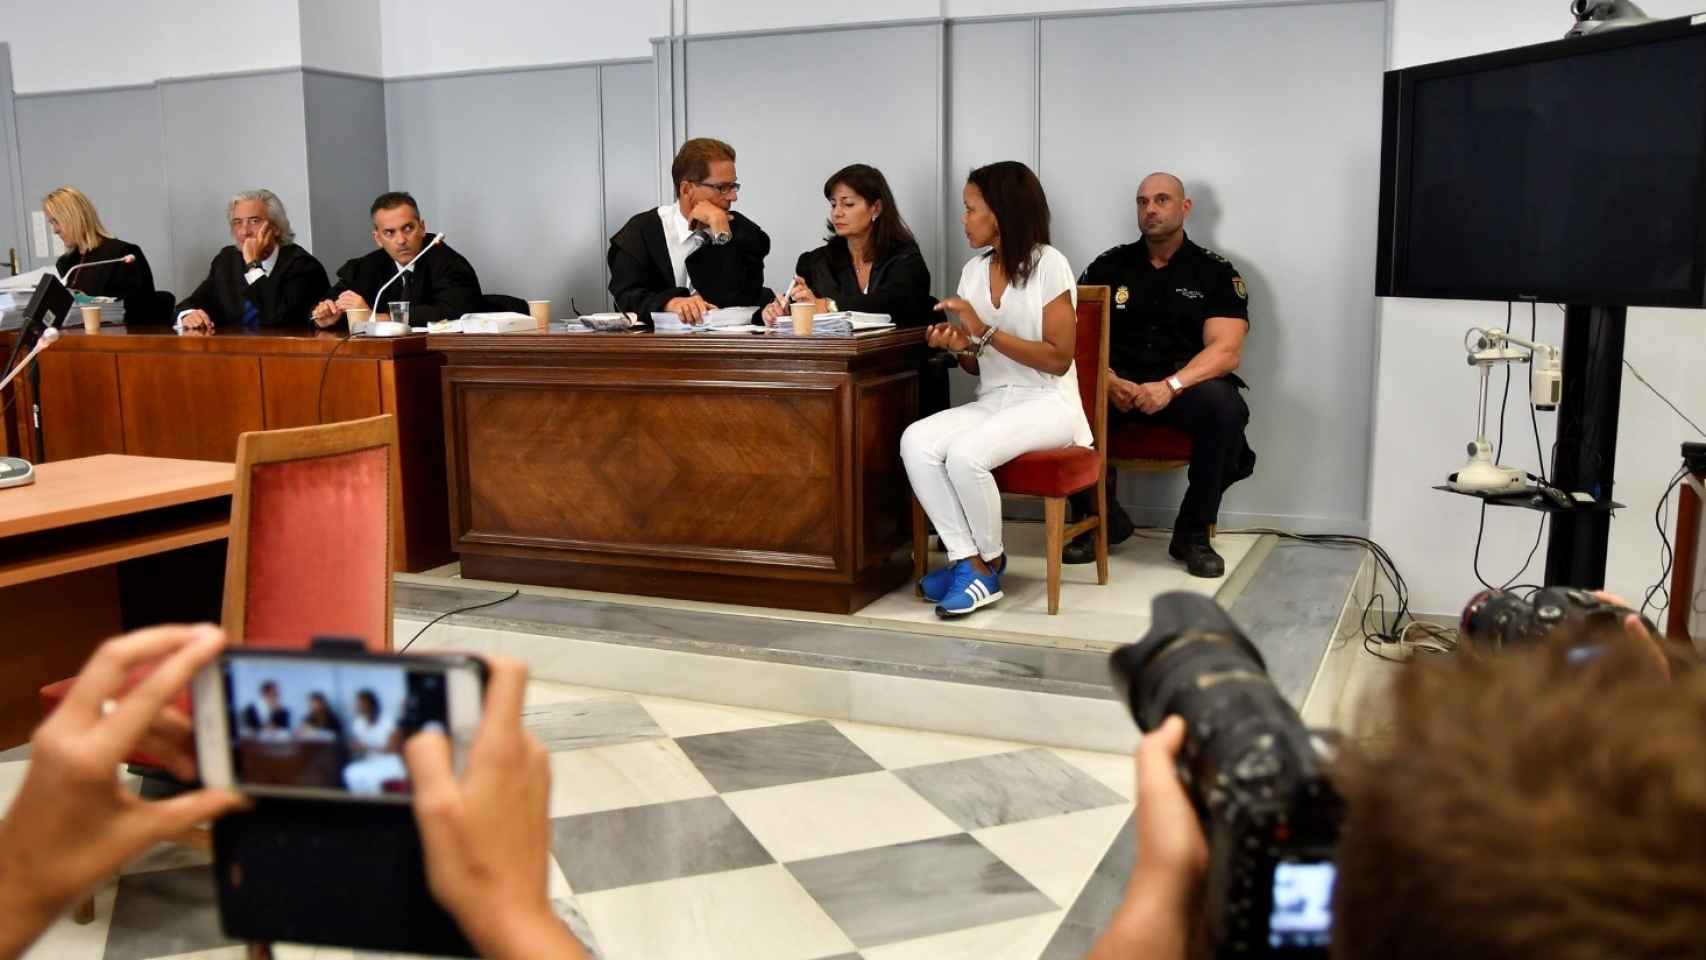 Segundo por la izquierda, el abogado Francisco Torres, mientras espera el inicio del juicio.